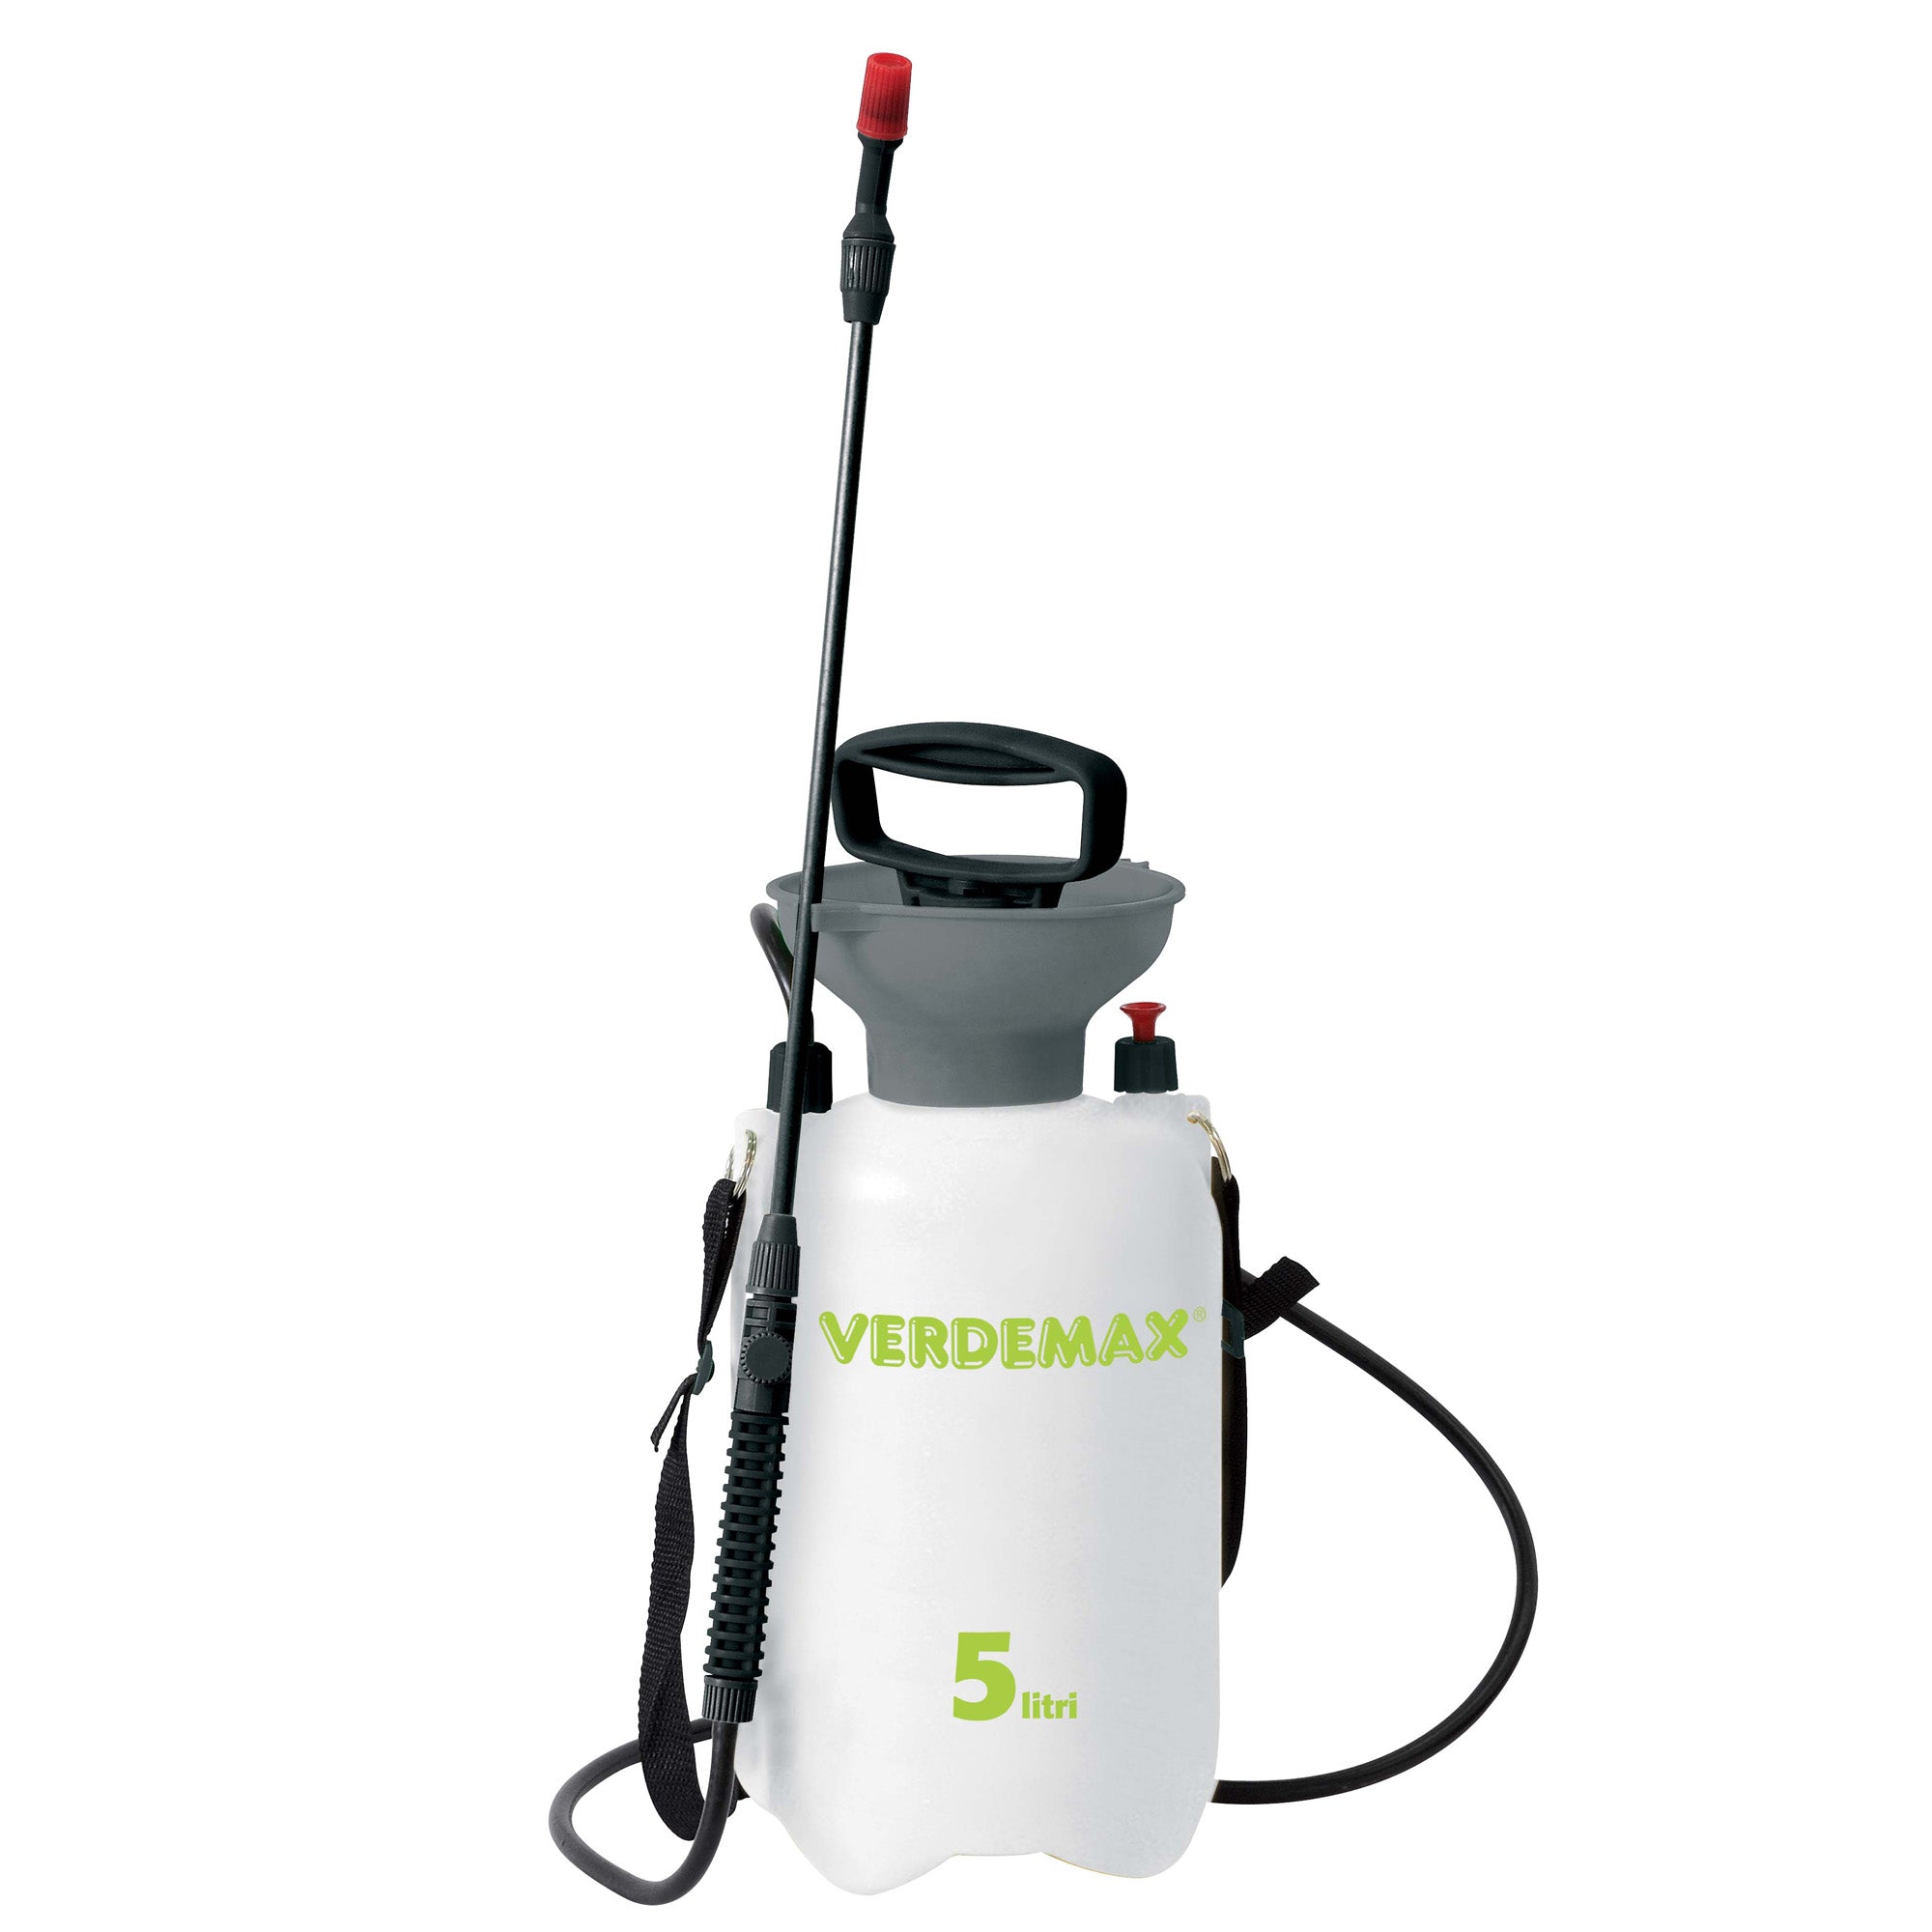 verdemax-pompa-pressione-manuale-5-litri